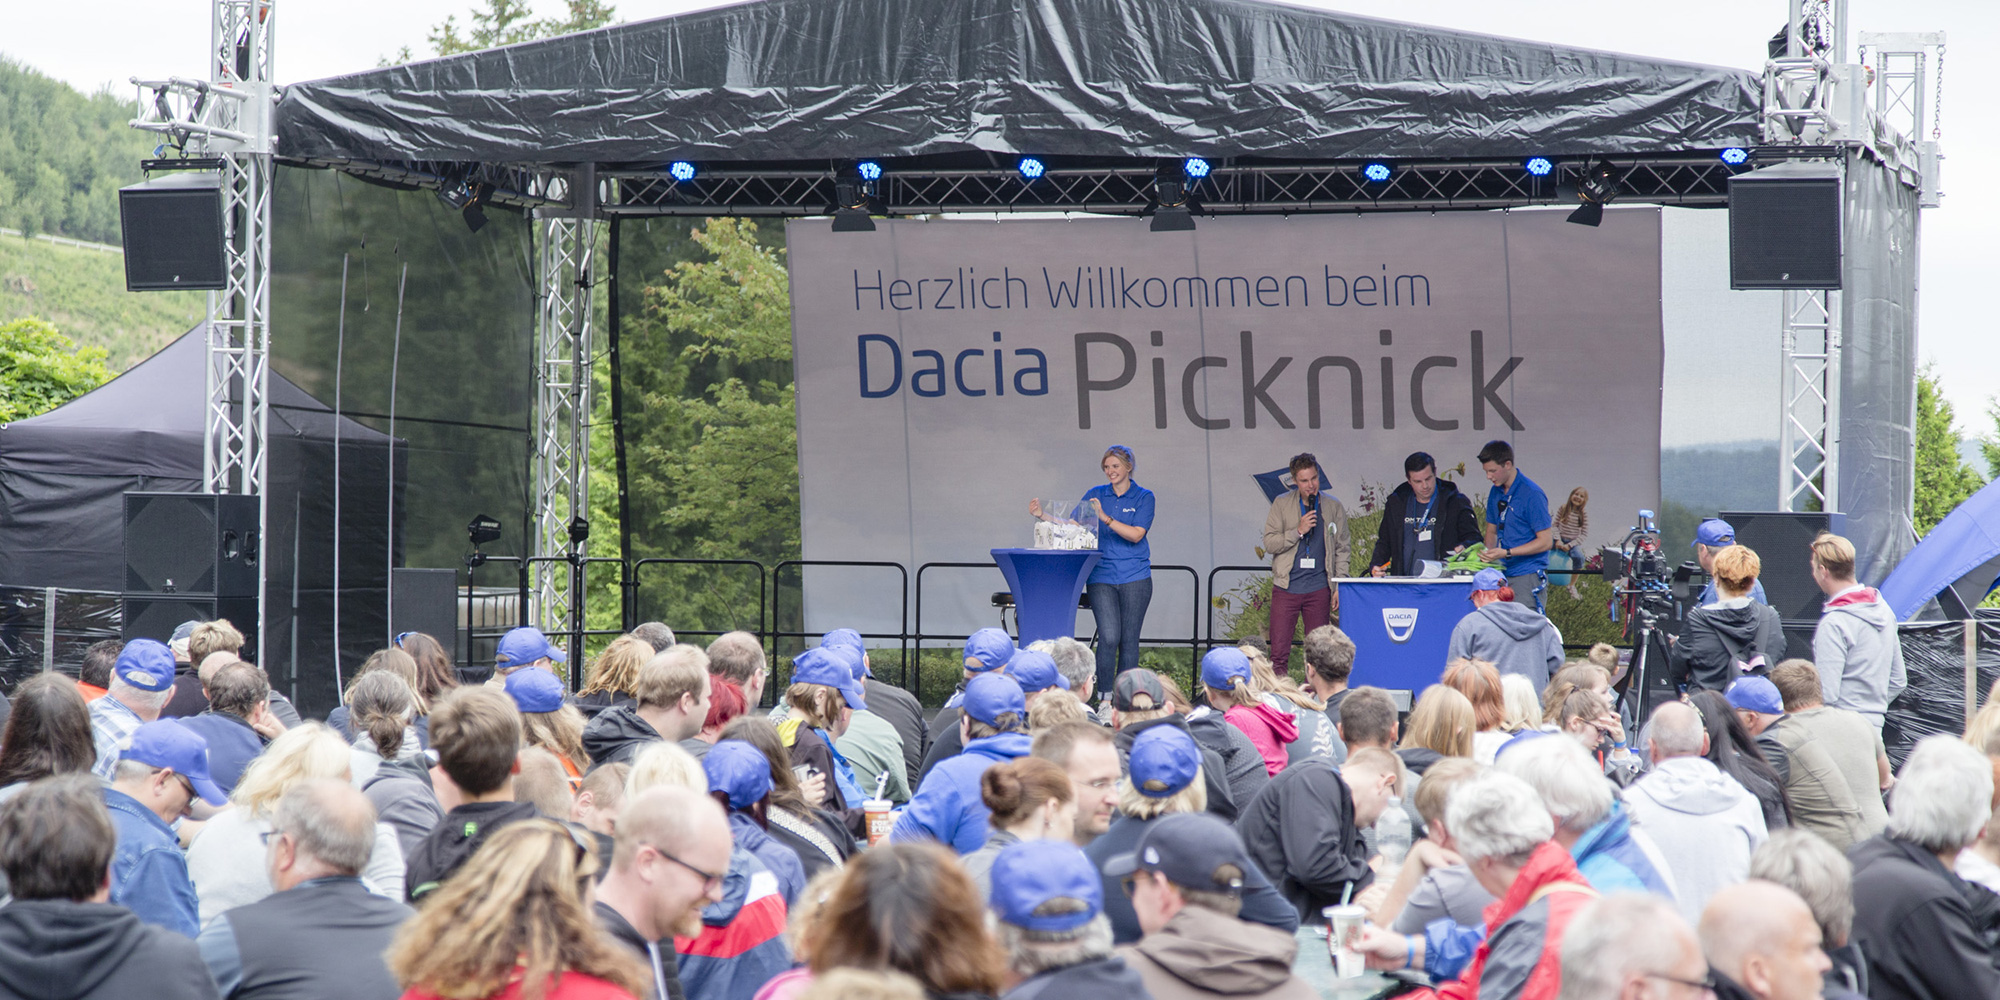 Freuen Sie sich aufs nächste Dacia Picknick